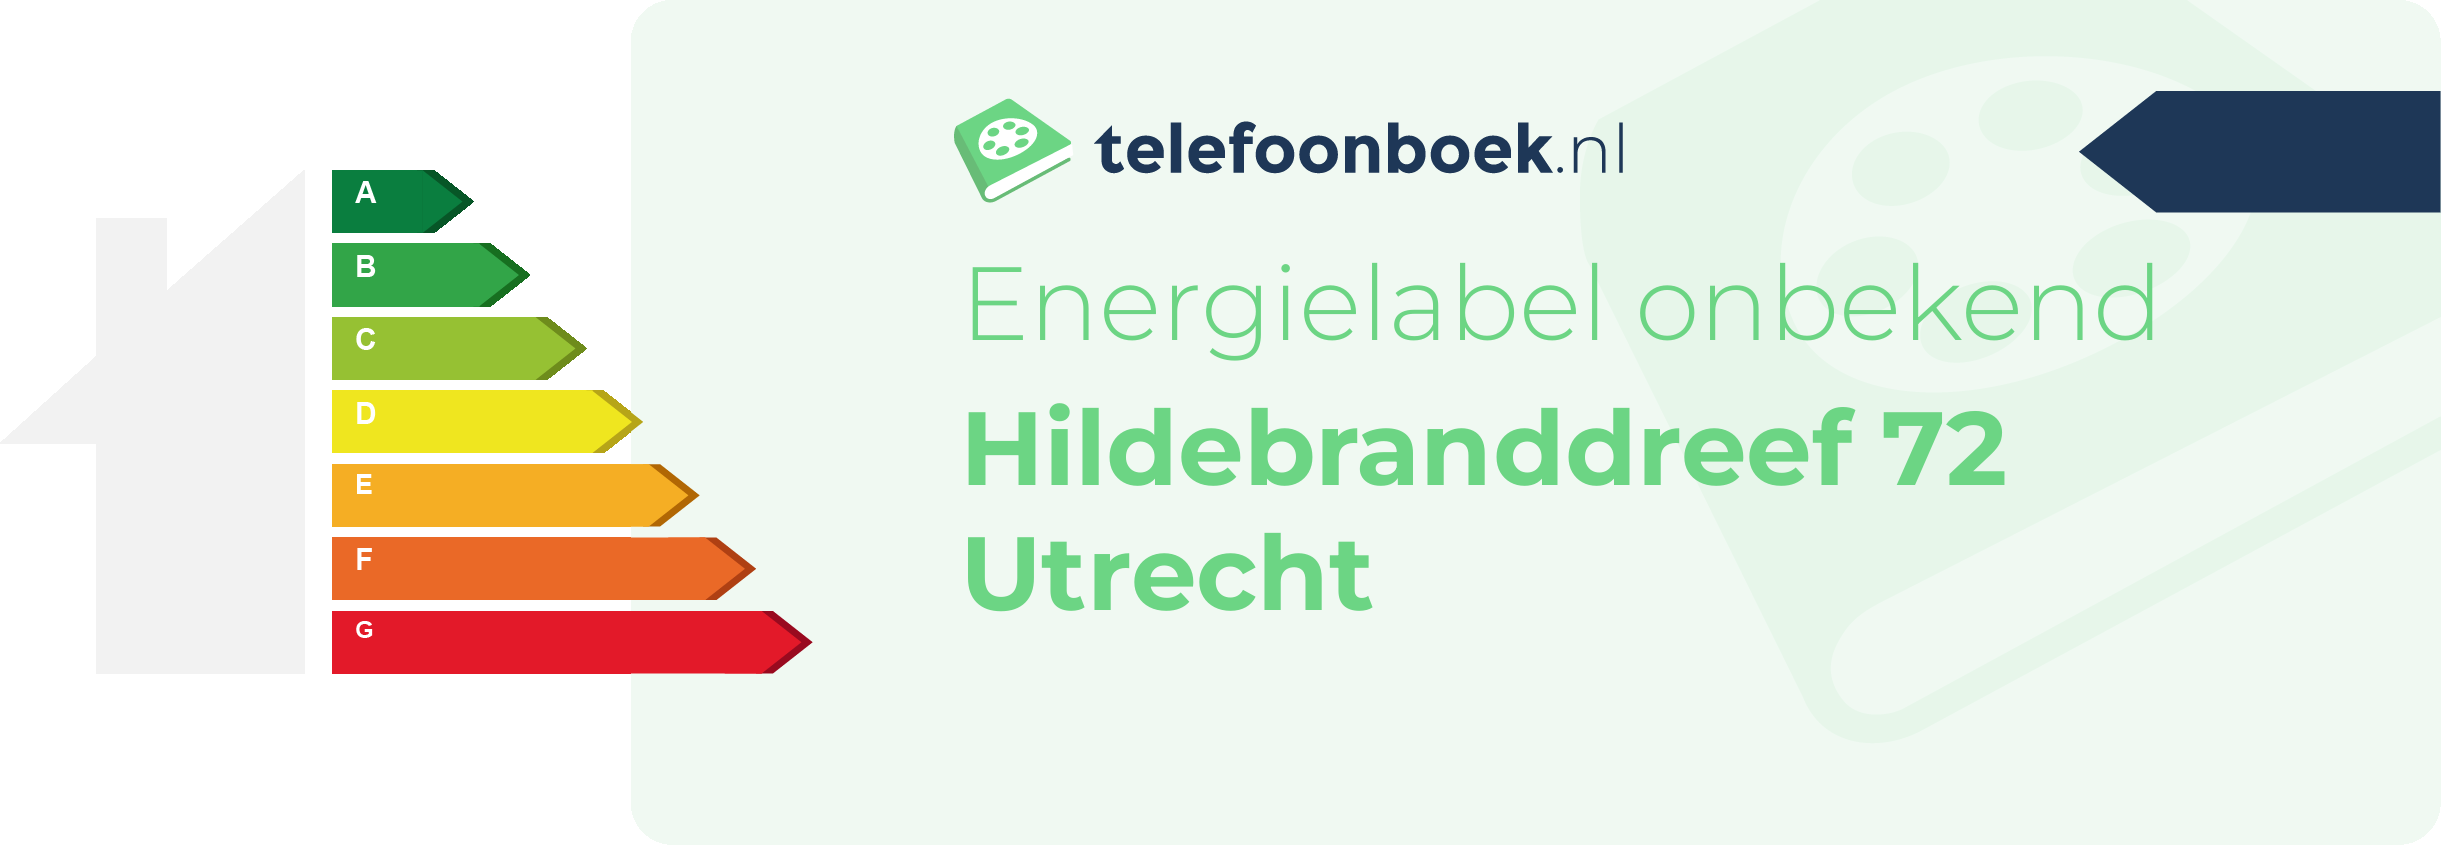 Energielabel Hildebranddreef 72 Utrecht